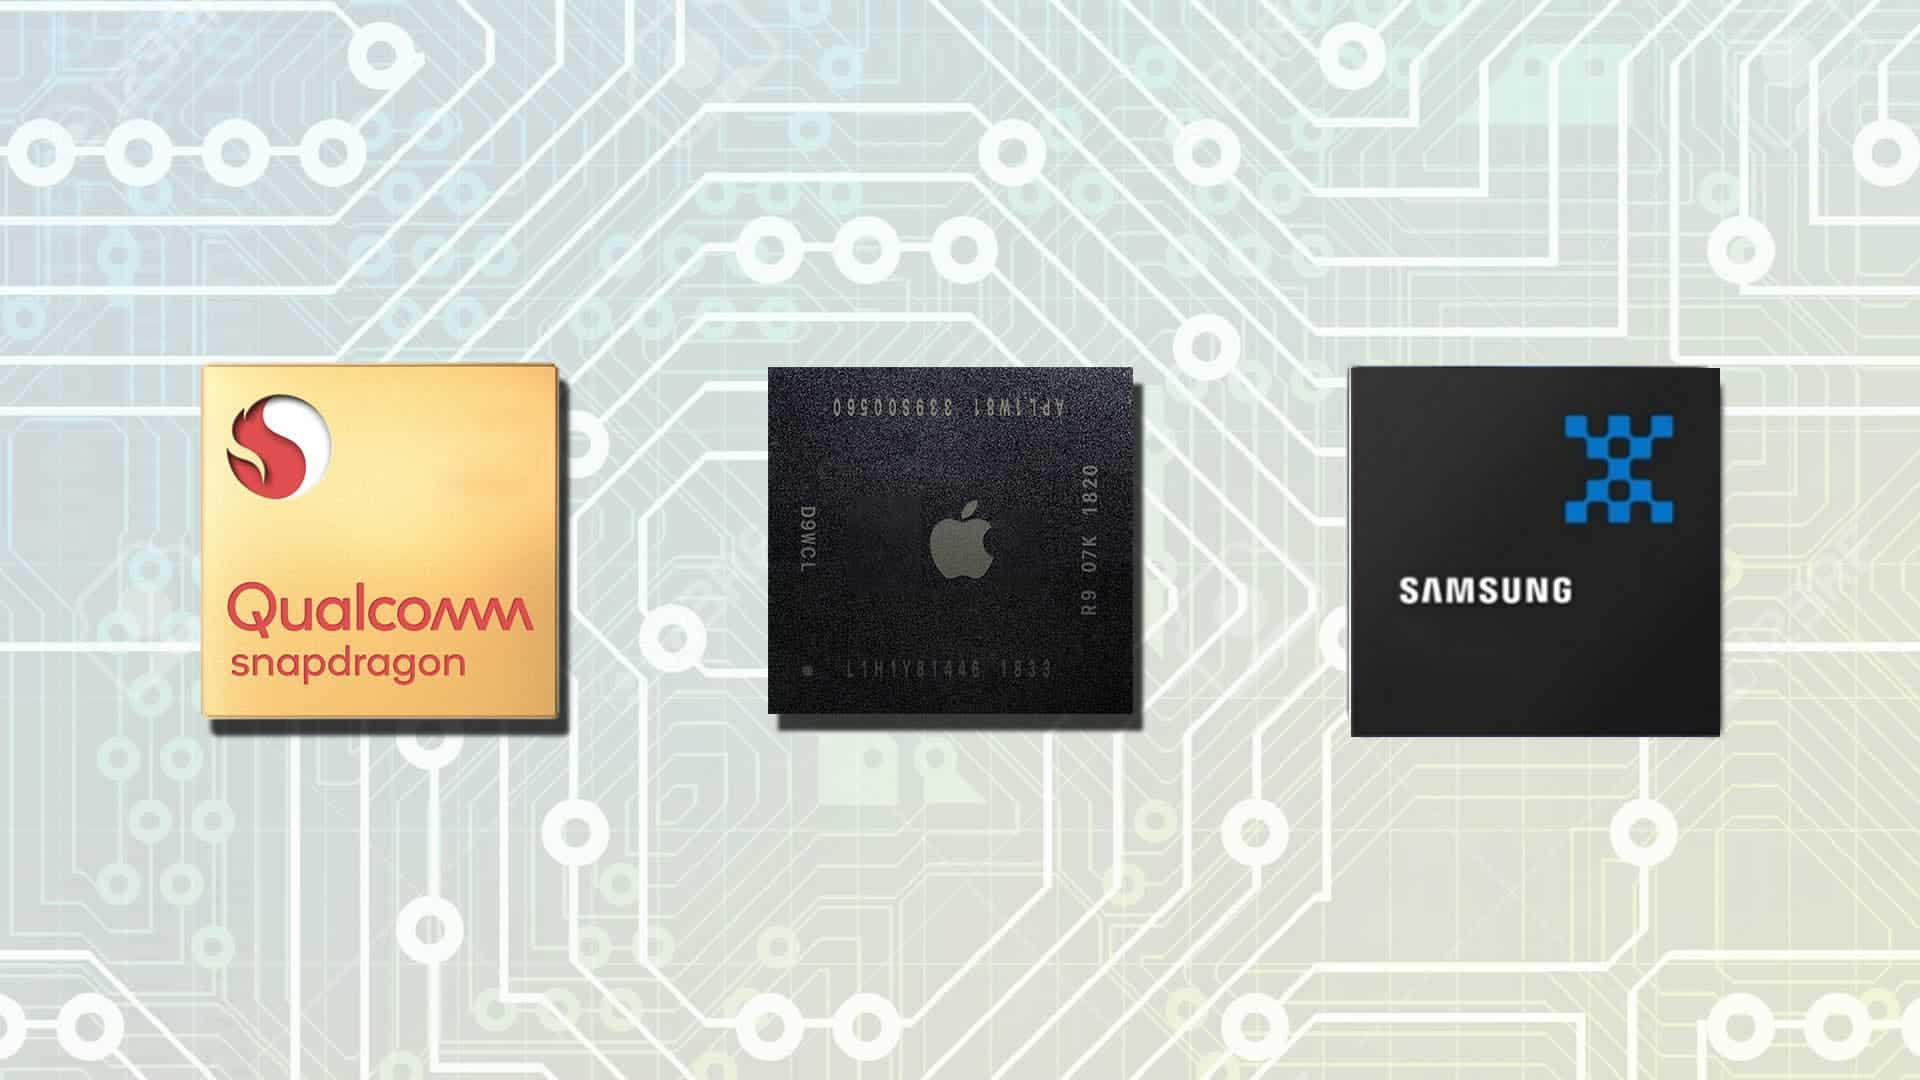 Samsung vs Qualcomm vs apple